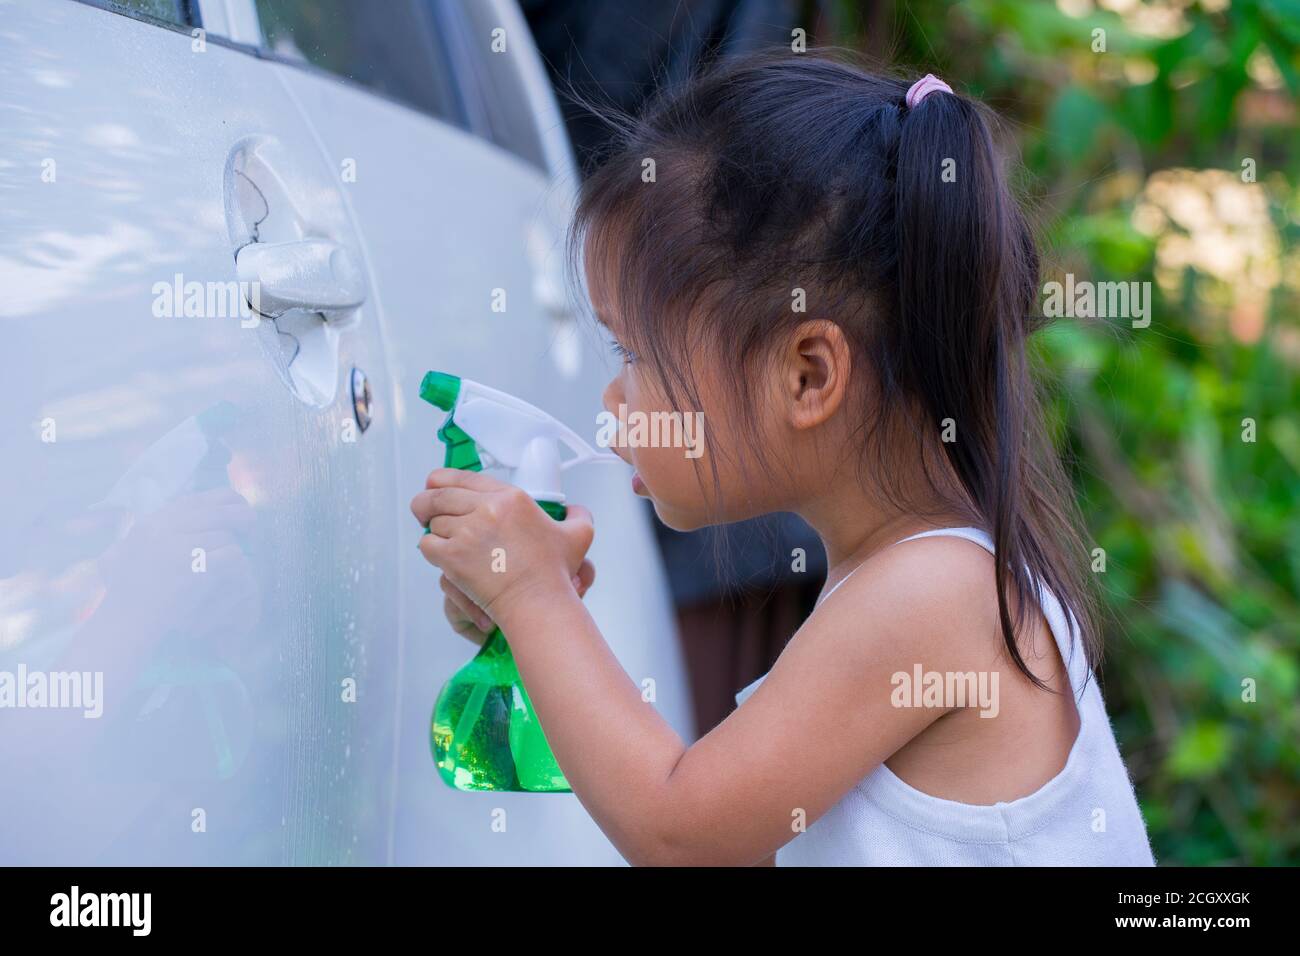 Los niños asiáticos restaban el jabón para limpiar el tirador de la puerta del coche. Foto de stock